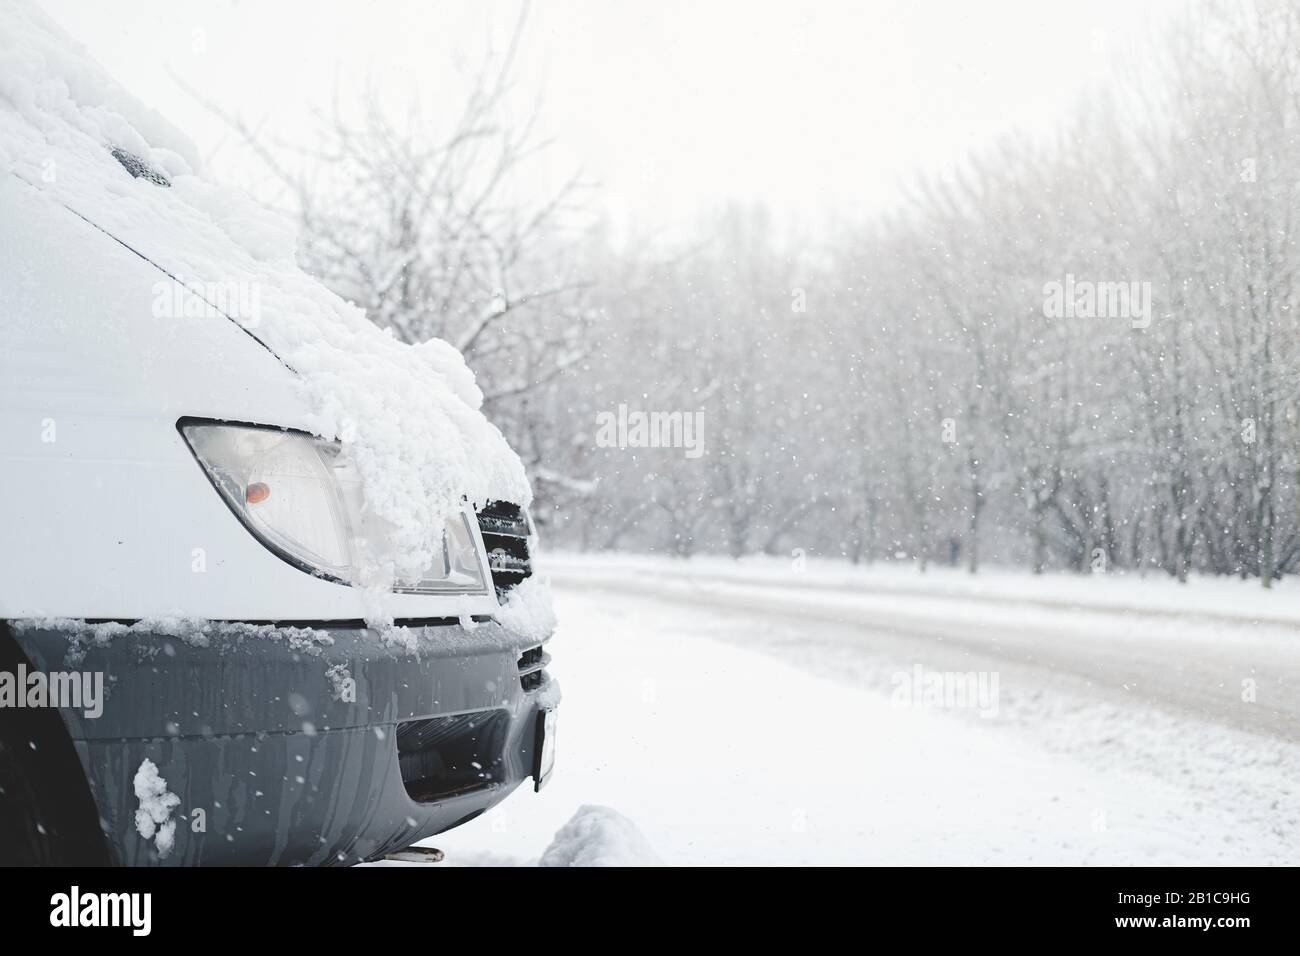 La parte anteriore di un'auto coperta di neve. Il veicolo si trova sulla strada innevata in condizioni climatiche tempestose Foto Stock